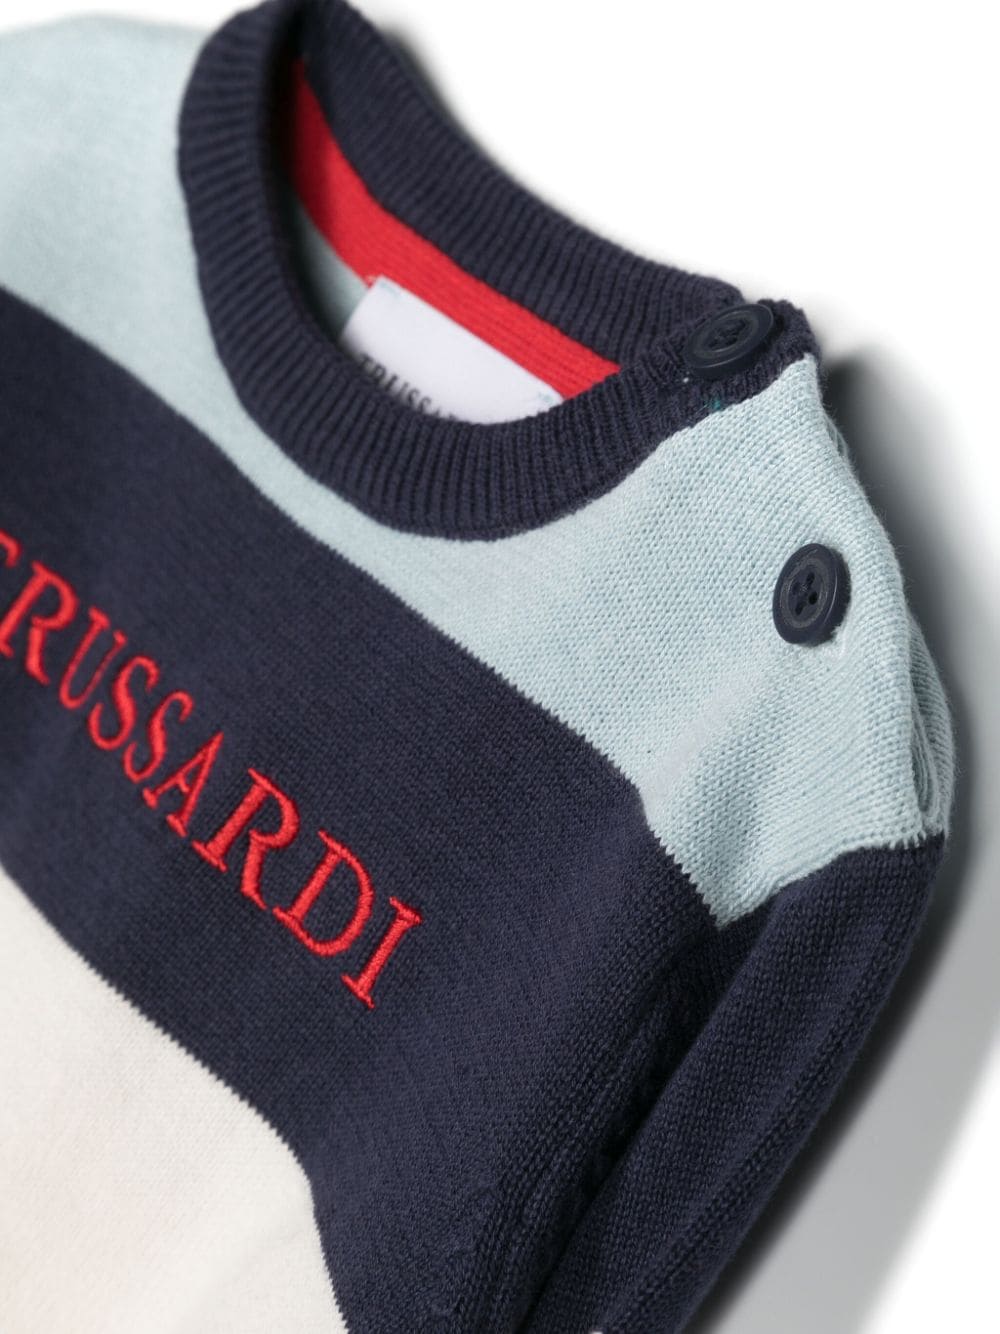 Maglione blu, rosso e bianco per neonato con logo